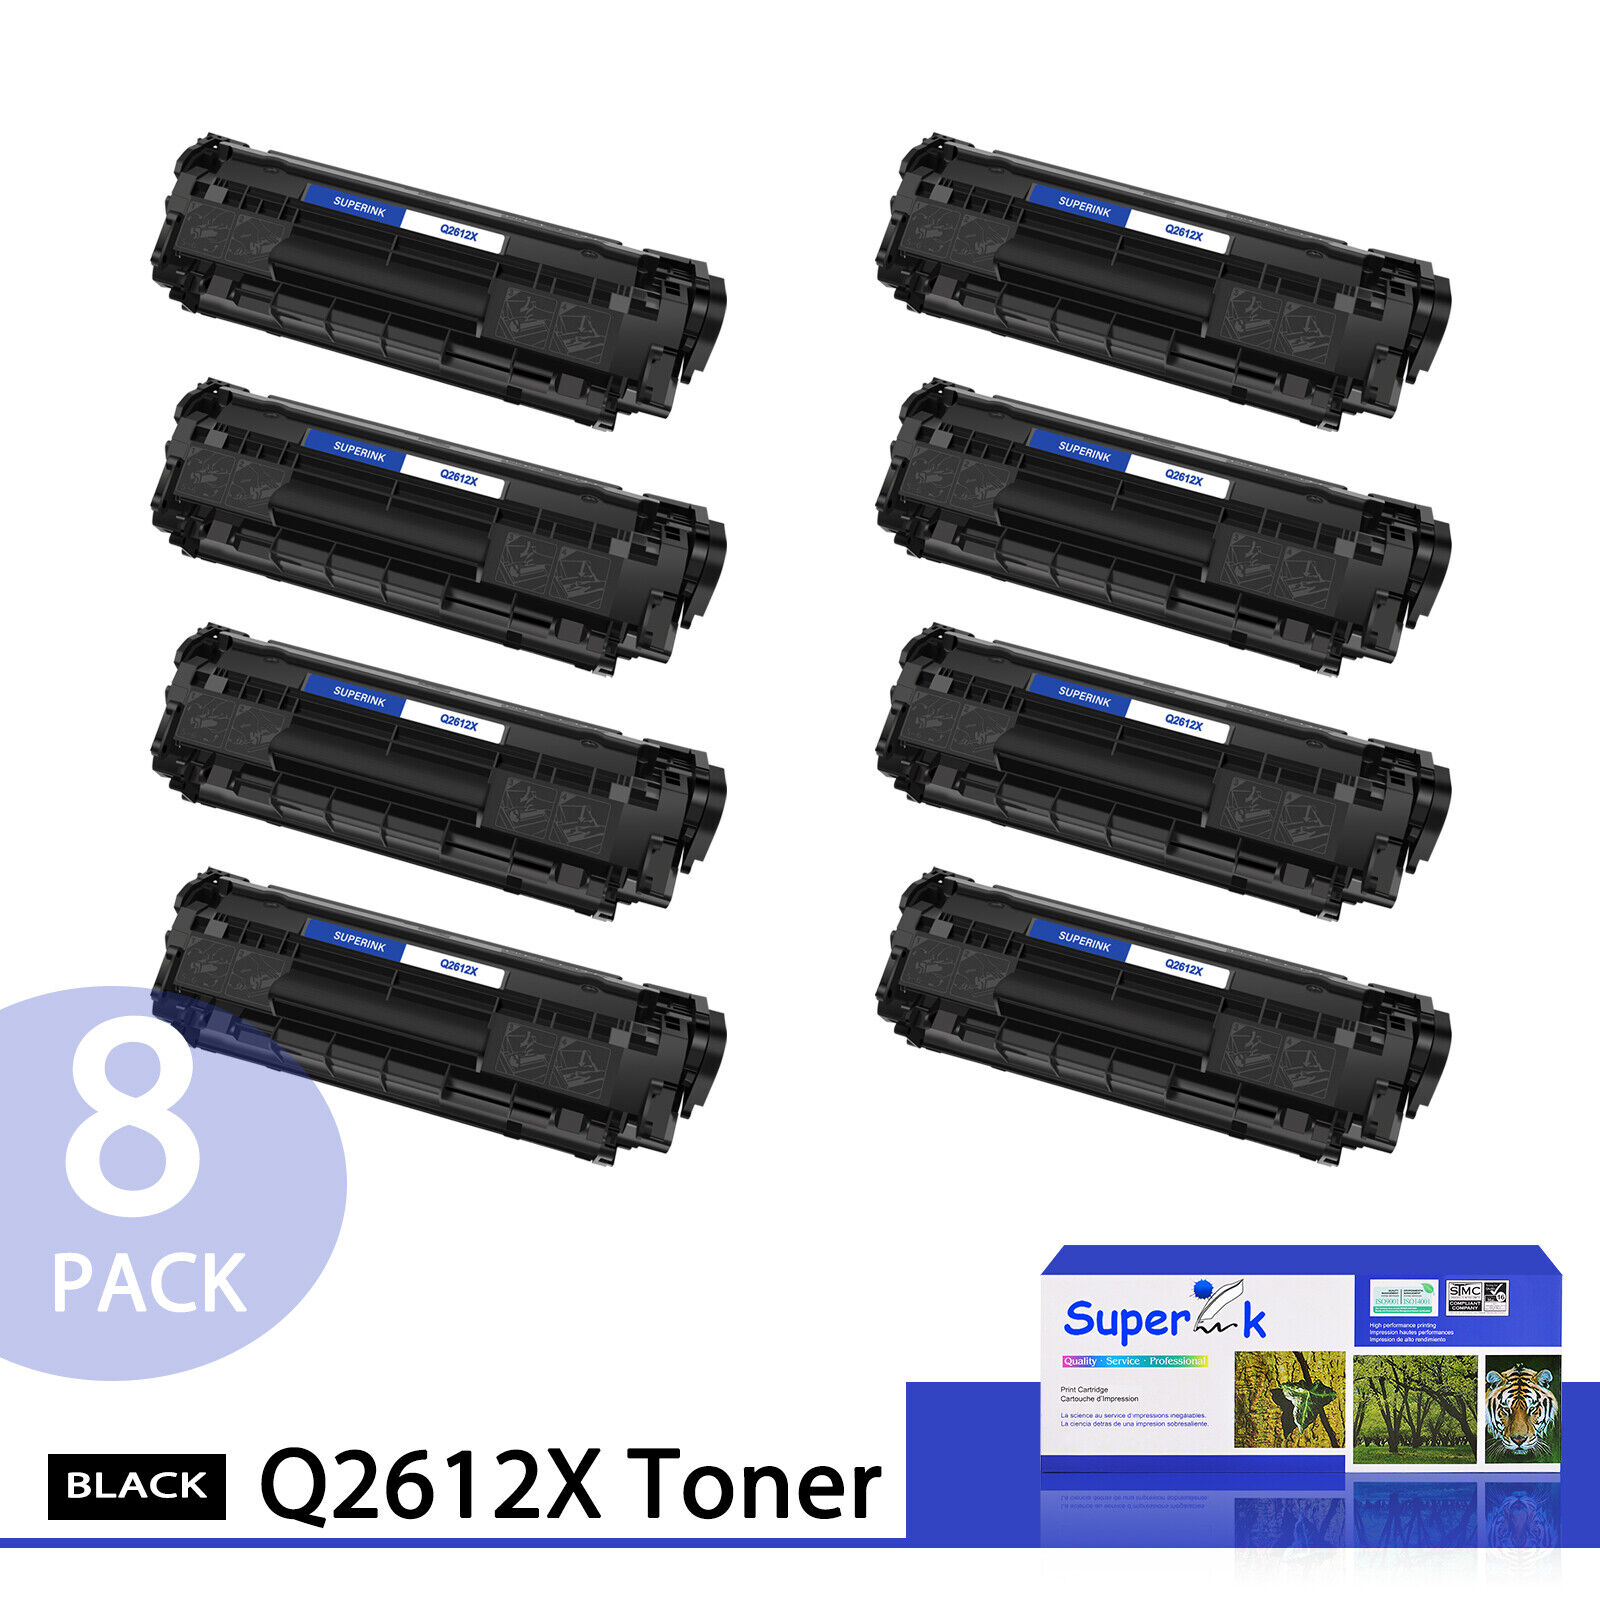 8PK Q2612X 12X Toner Cartridge BLK For HP LaserJet 1010 1012 1015 1018 1020 1022